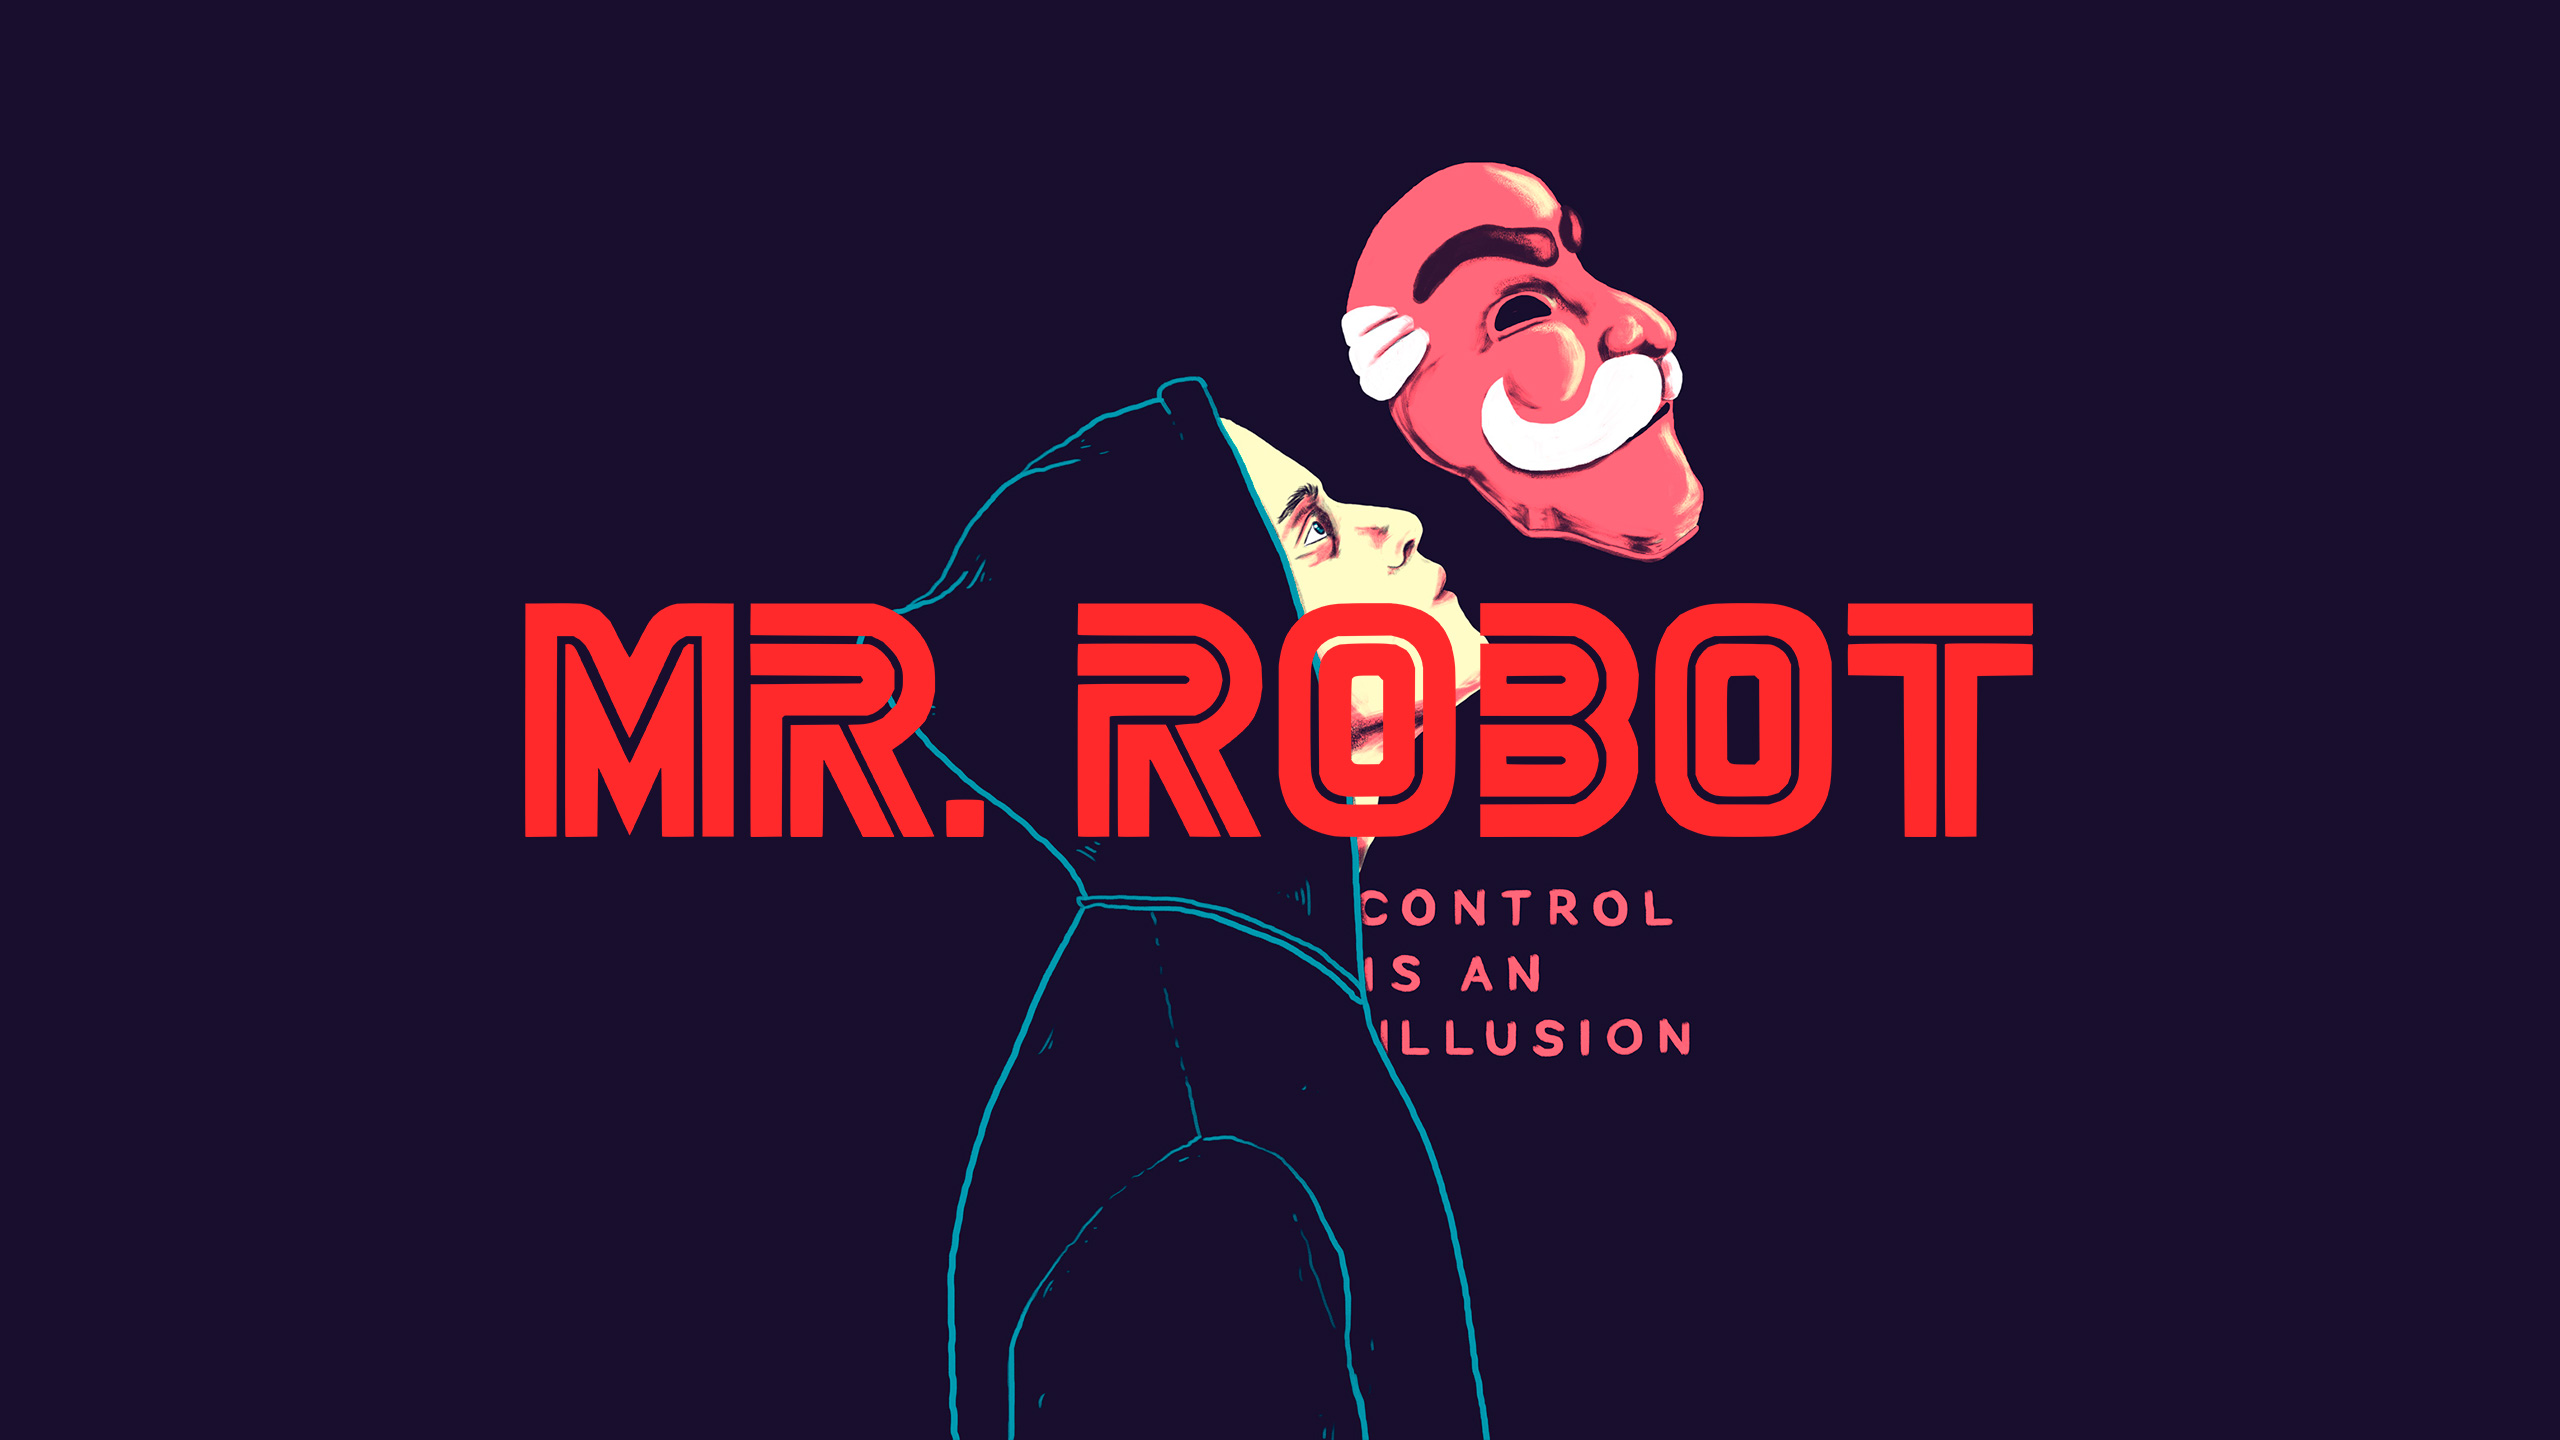 Mr Robot Fan art 2K